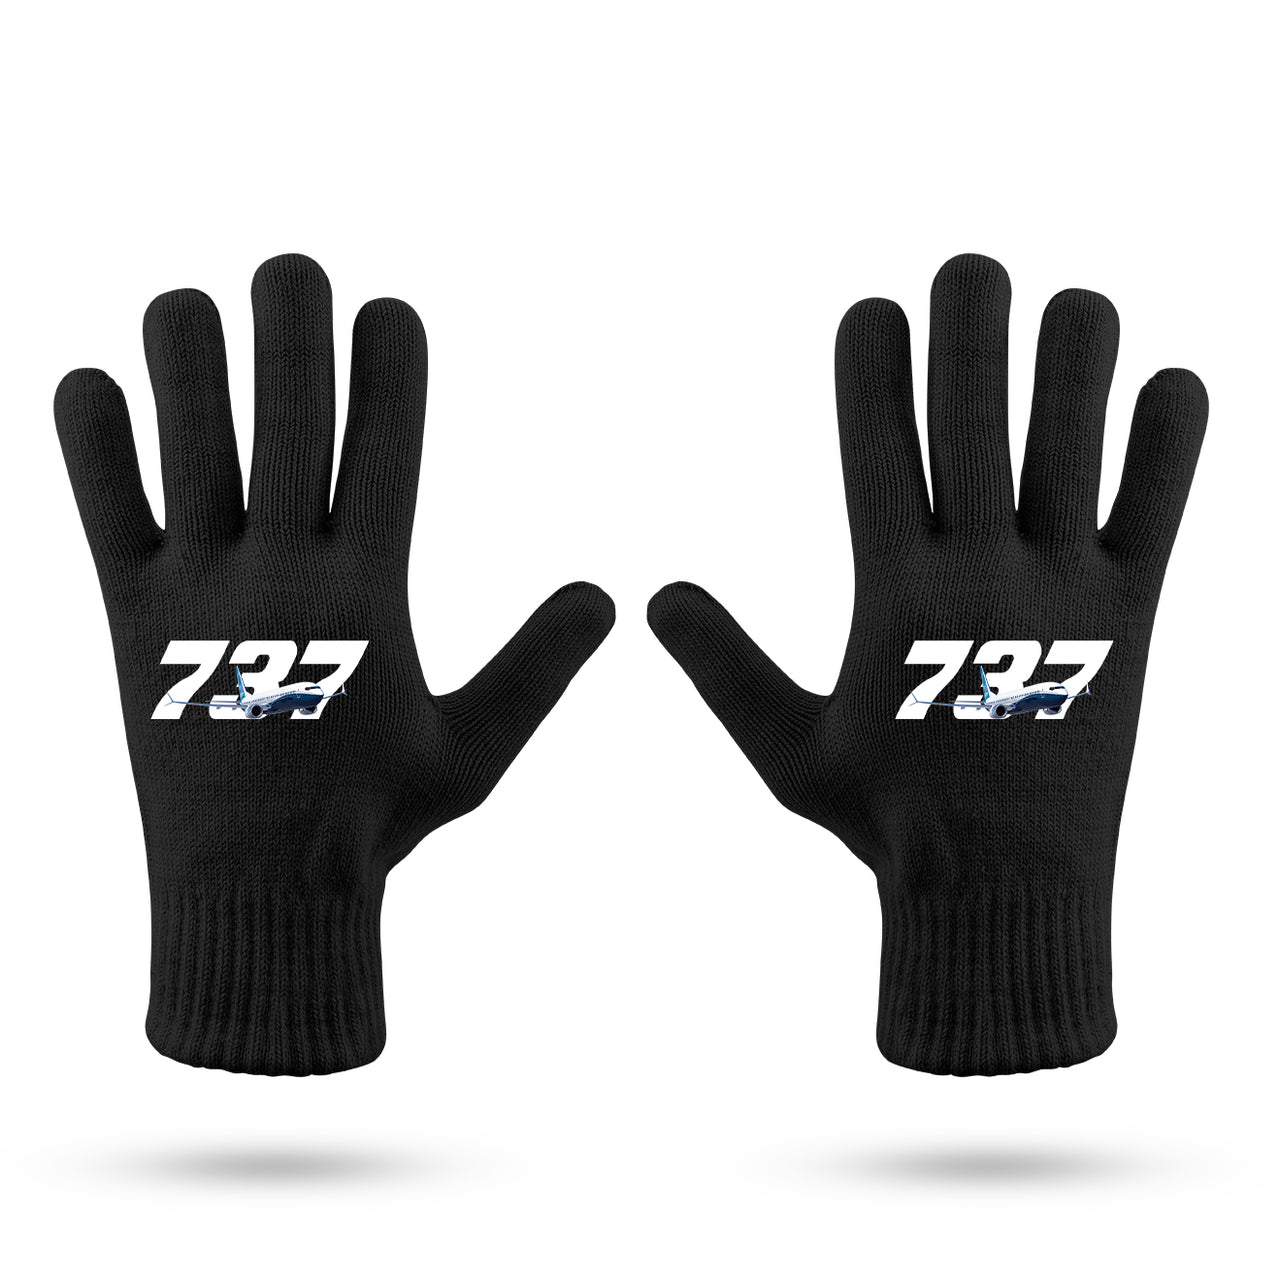 Super Boeing 737 Designed Gloves